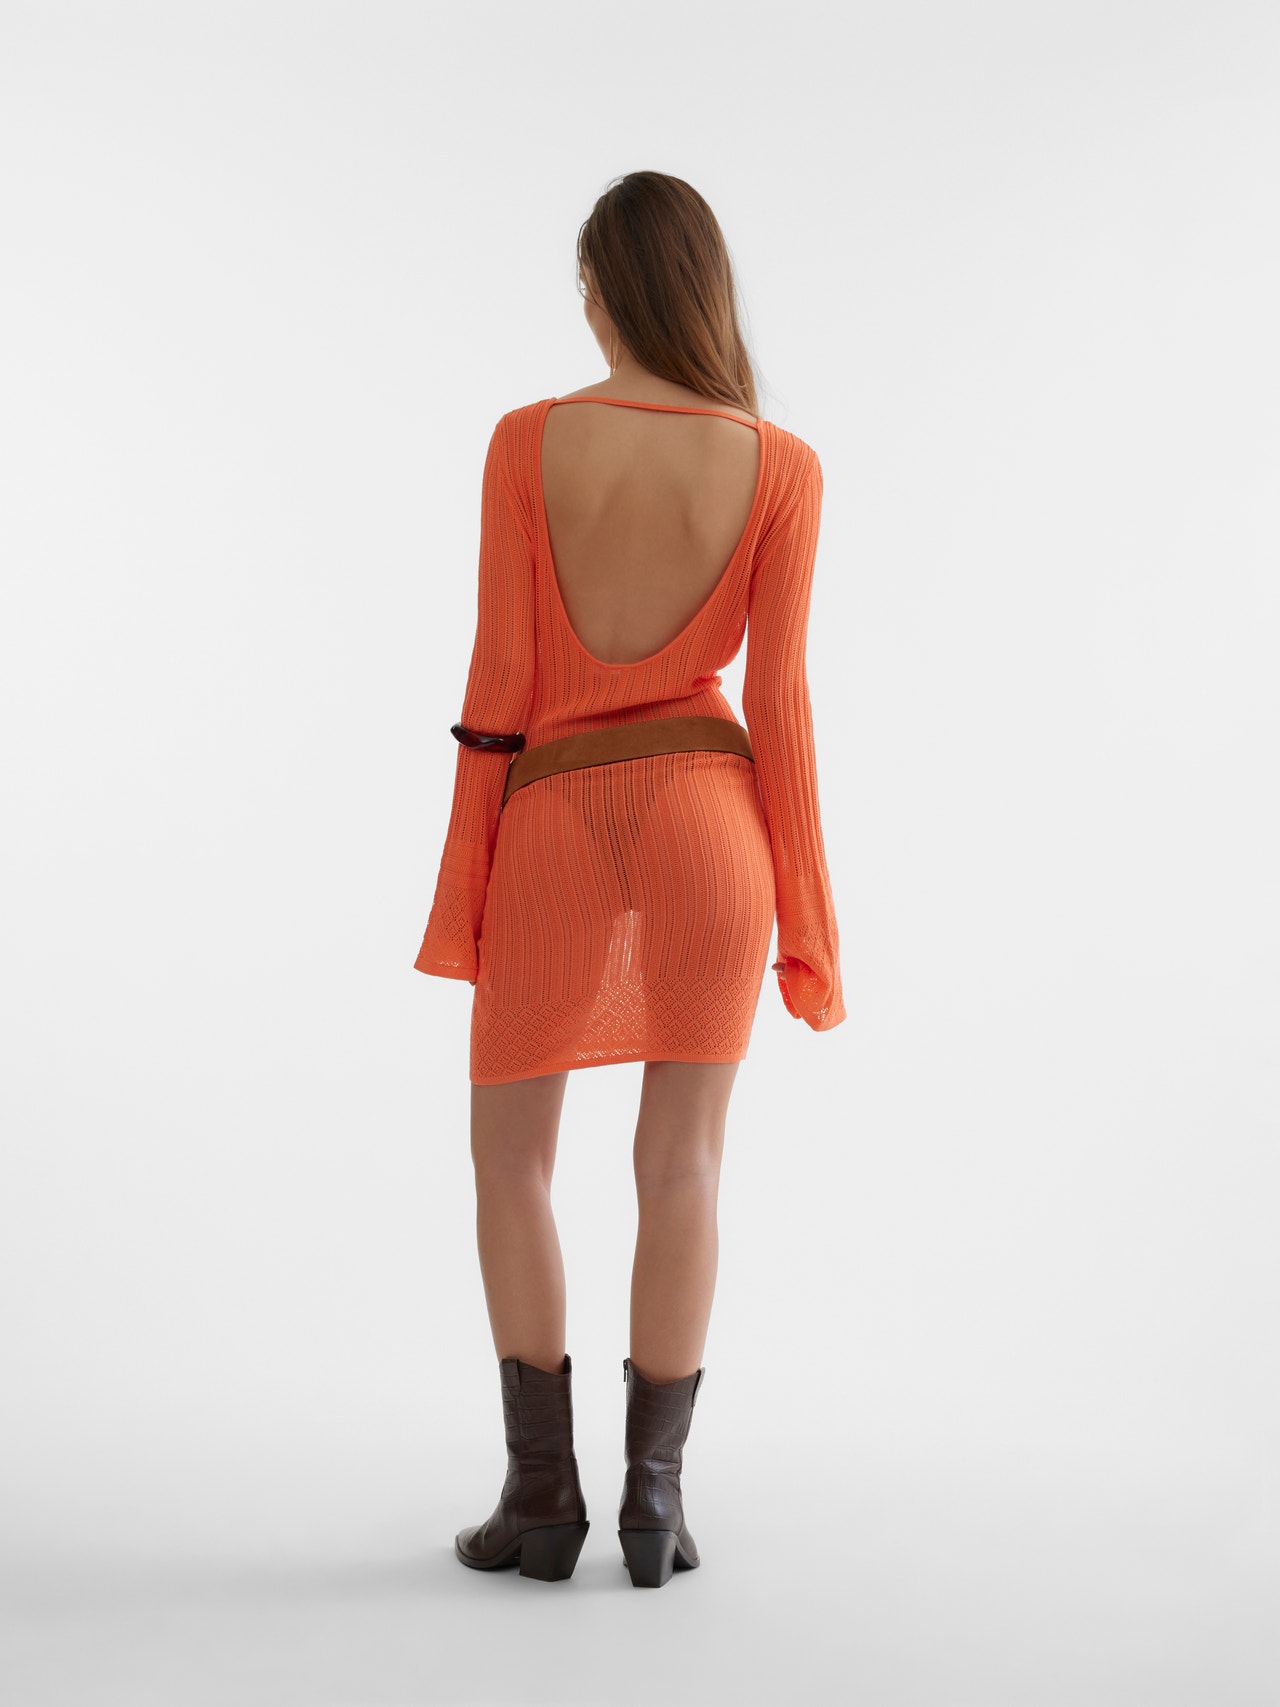 Vero Moda SOMETHINGNEW Styled by; Larissa Wehr Short dress -Camellia - 10307802